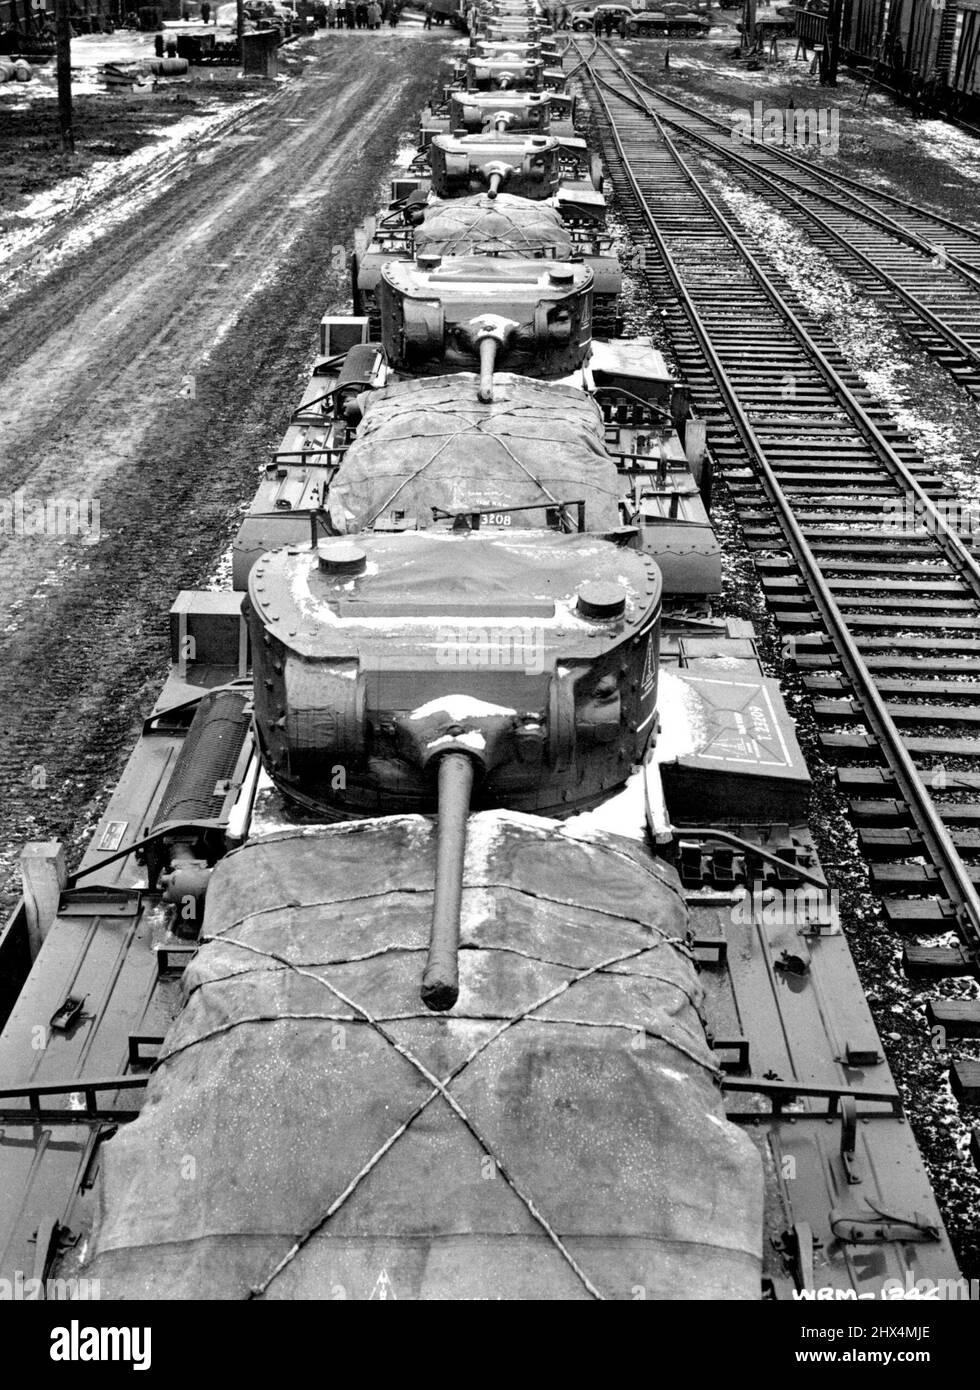 Canadian Tanks bound for Russian Front -- Lungo la linea di carri armati di fanteria costruiti in Canada caricati a bordo di auto piatte lascia i negozi di Angus a Montreal al primo giro del lungo viaggio verso il fronte russo dove contribuiranno a spingere indietro le onde di gelo morso nazisti sui settori di Mosca e Sud. Cento di questi carri armati di fanteria saranno inviati in Russia dal Canada. Ognuno pesa 20 toni e ha una velocità massima di 20 miglia all'ora. Più di 3.500 uomini mantengono l'impianto in funzione giorno e notte, sei giorni alla settimana per mantenere questi mostri in acciaio che fluiscono dalla linea di assemblaggio su una base di produzione di massa. Mar Foto Stock